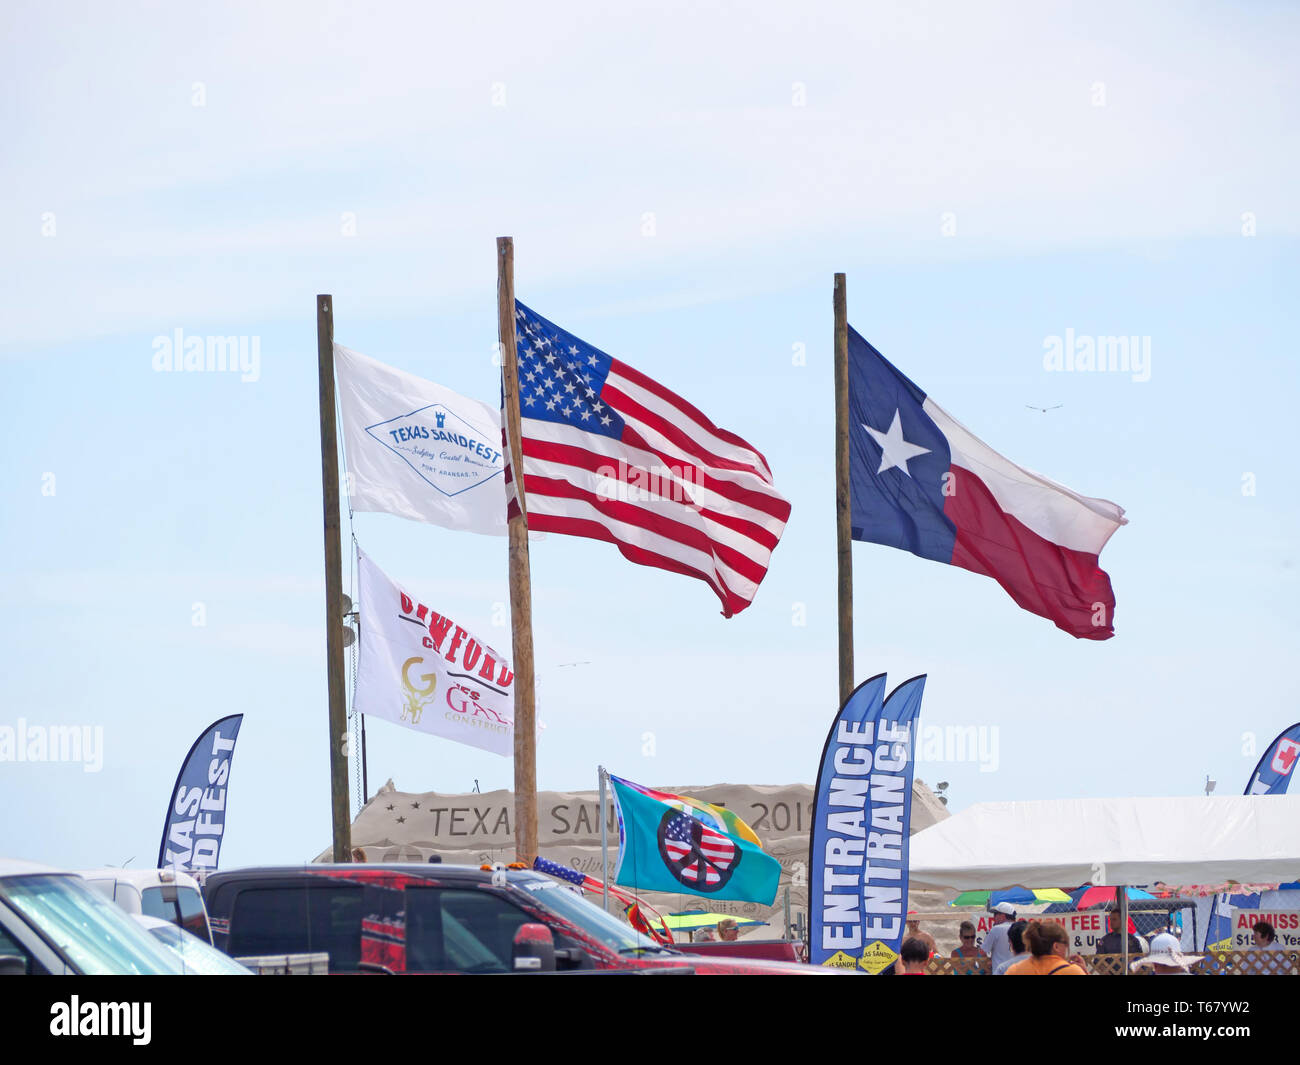 Texas Sandfest, United States et Texas State flags voler contre un ciel bleu pâle à l'entrée du Texas 2019 Sandfest à Port Aransas, Texas USA. Banque D'Images